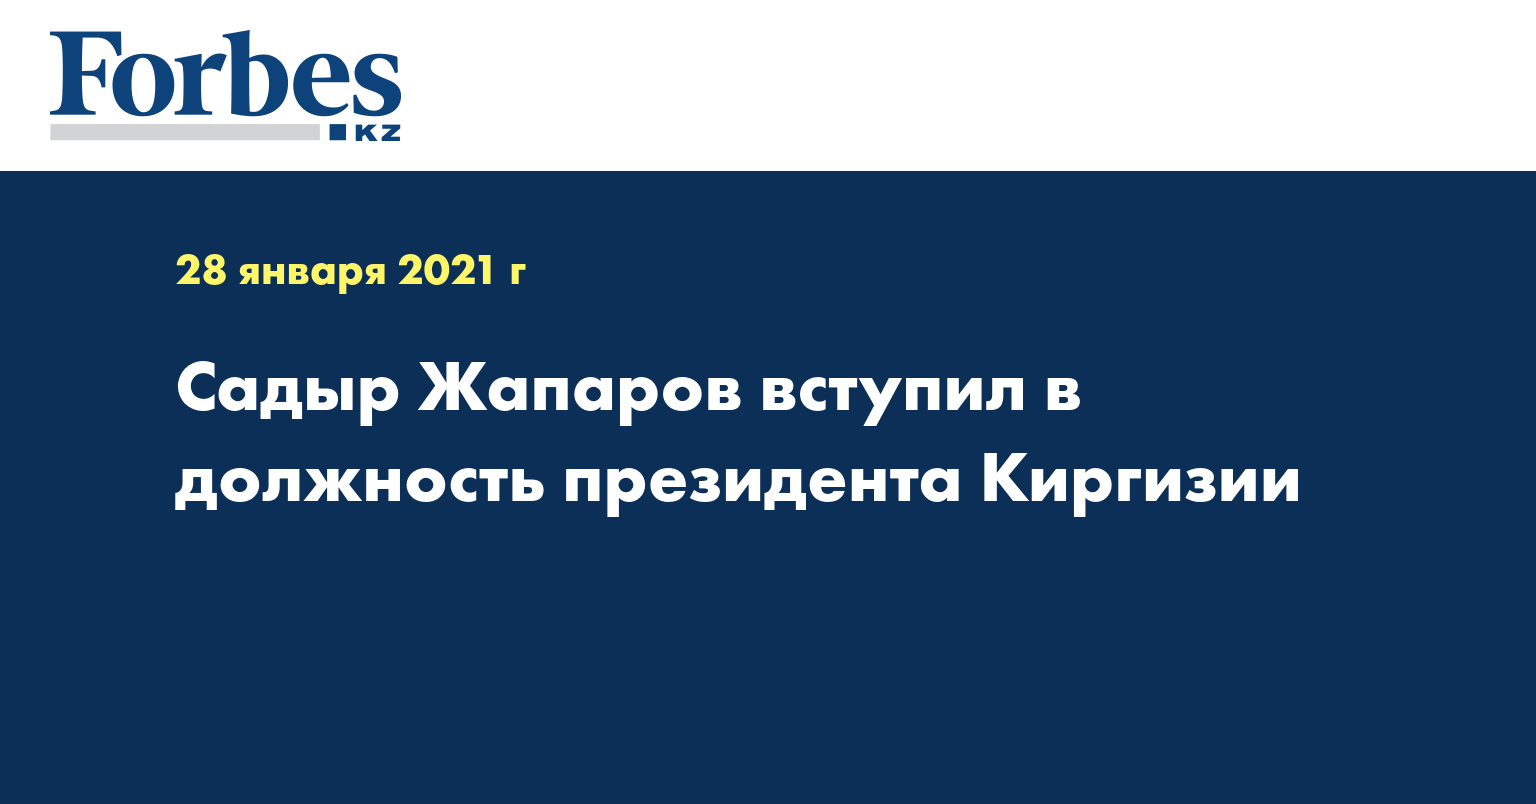  Садыр Жапаров вступил в должность президента Киргизии